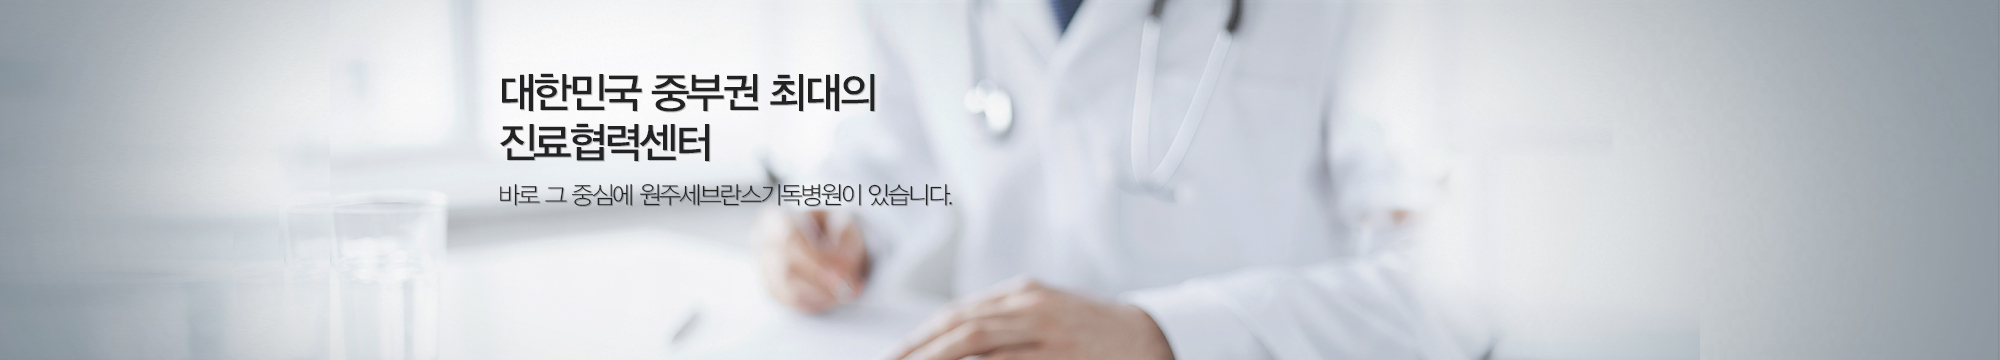 대한민국 중부권 최대의 진료협력센터-문구수정